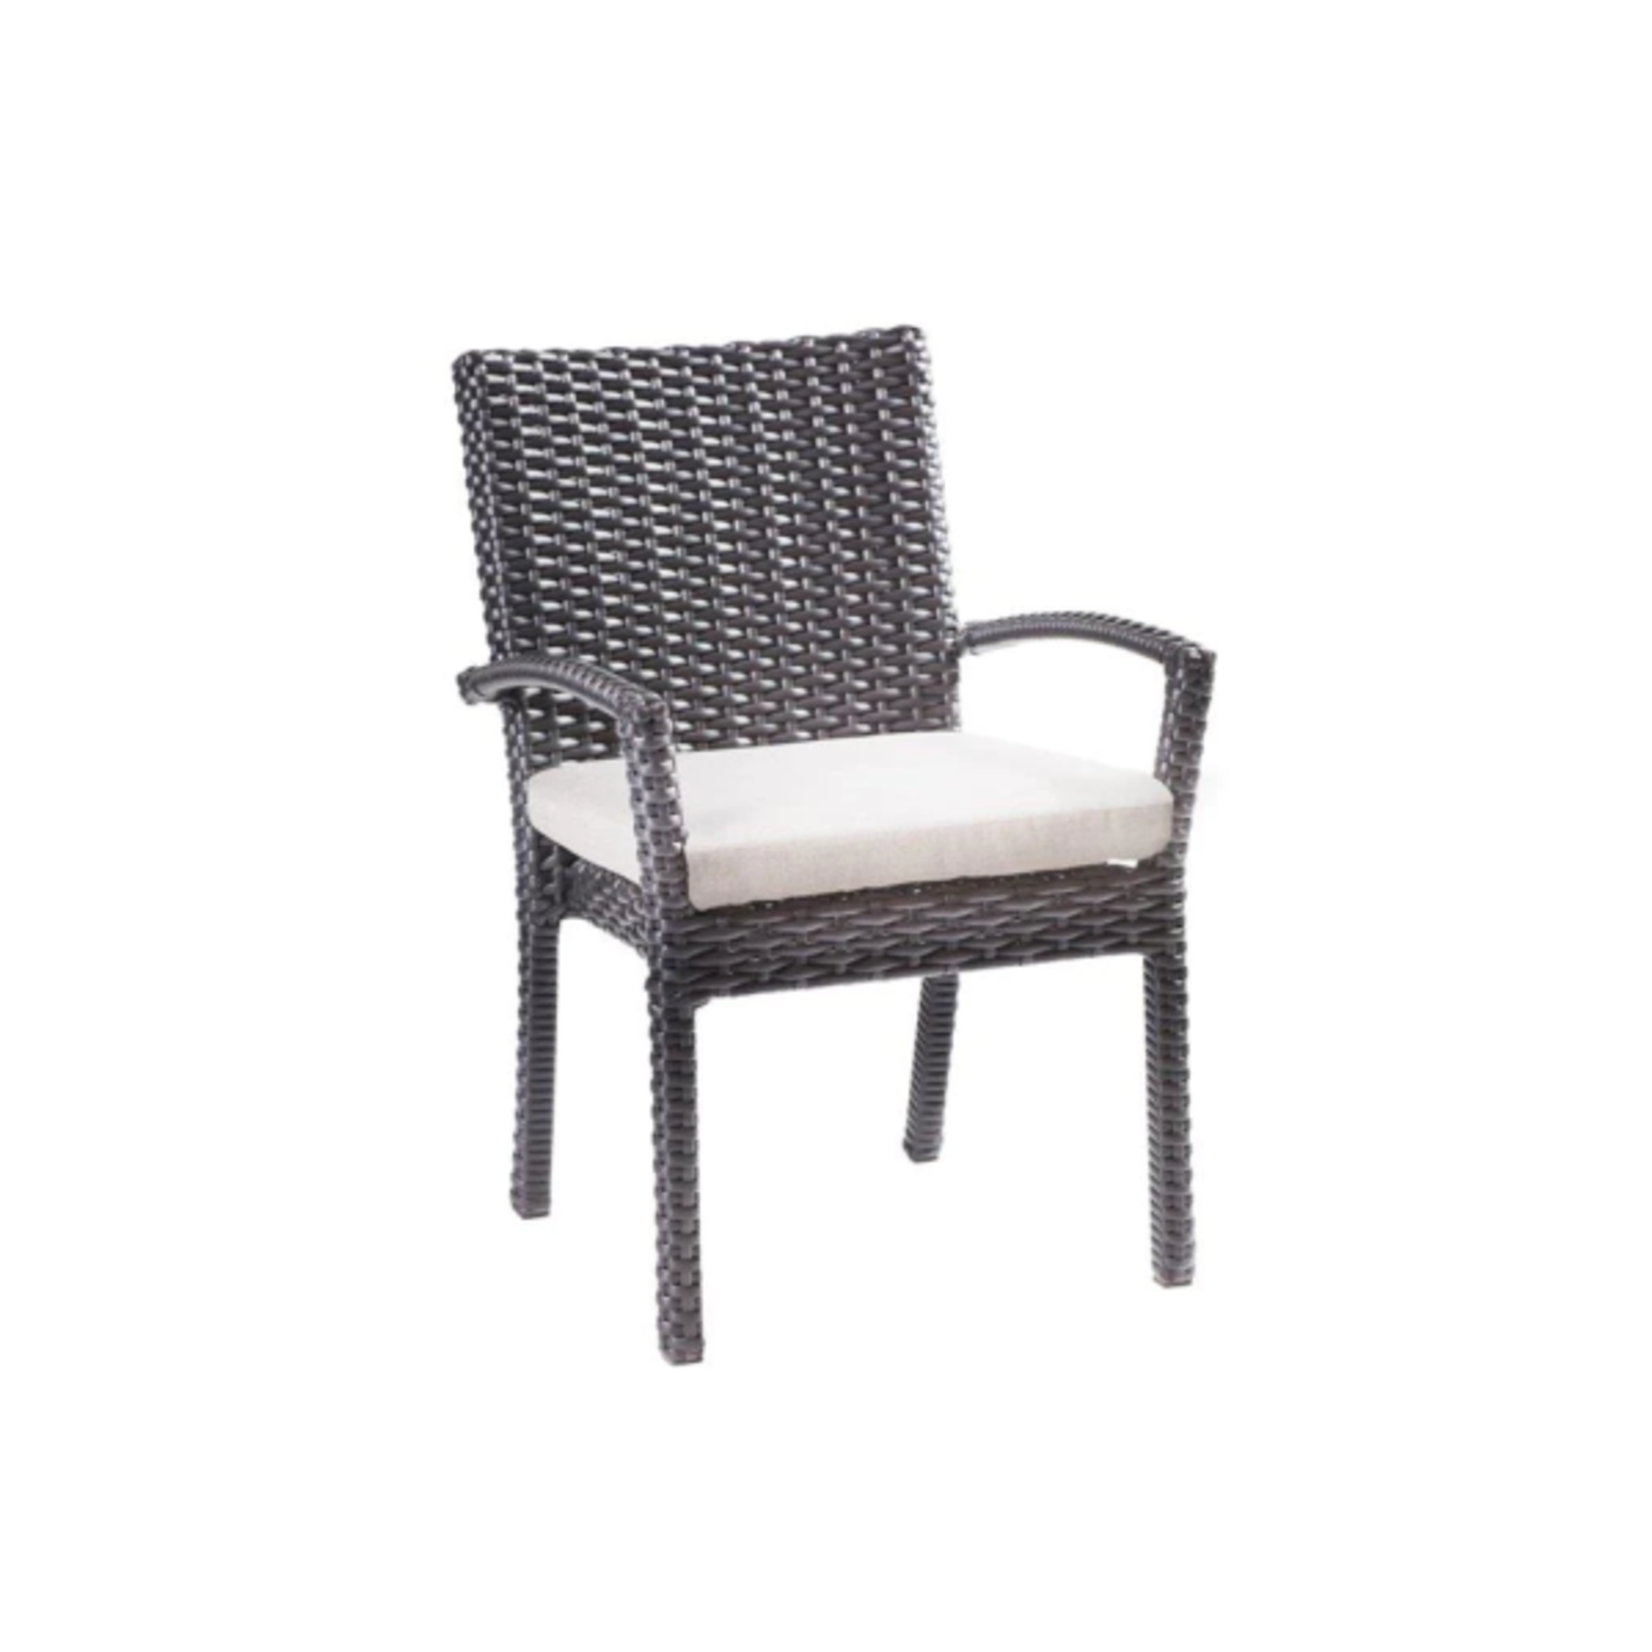 Enclover TRILLIUM Dining Chair Ebony W cushion  (24 x 26 x 36)